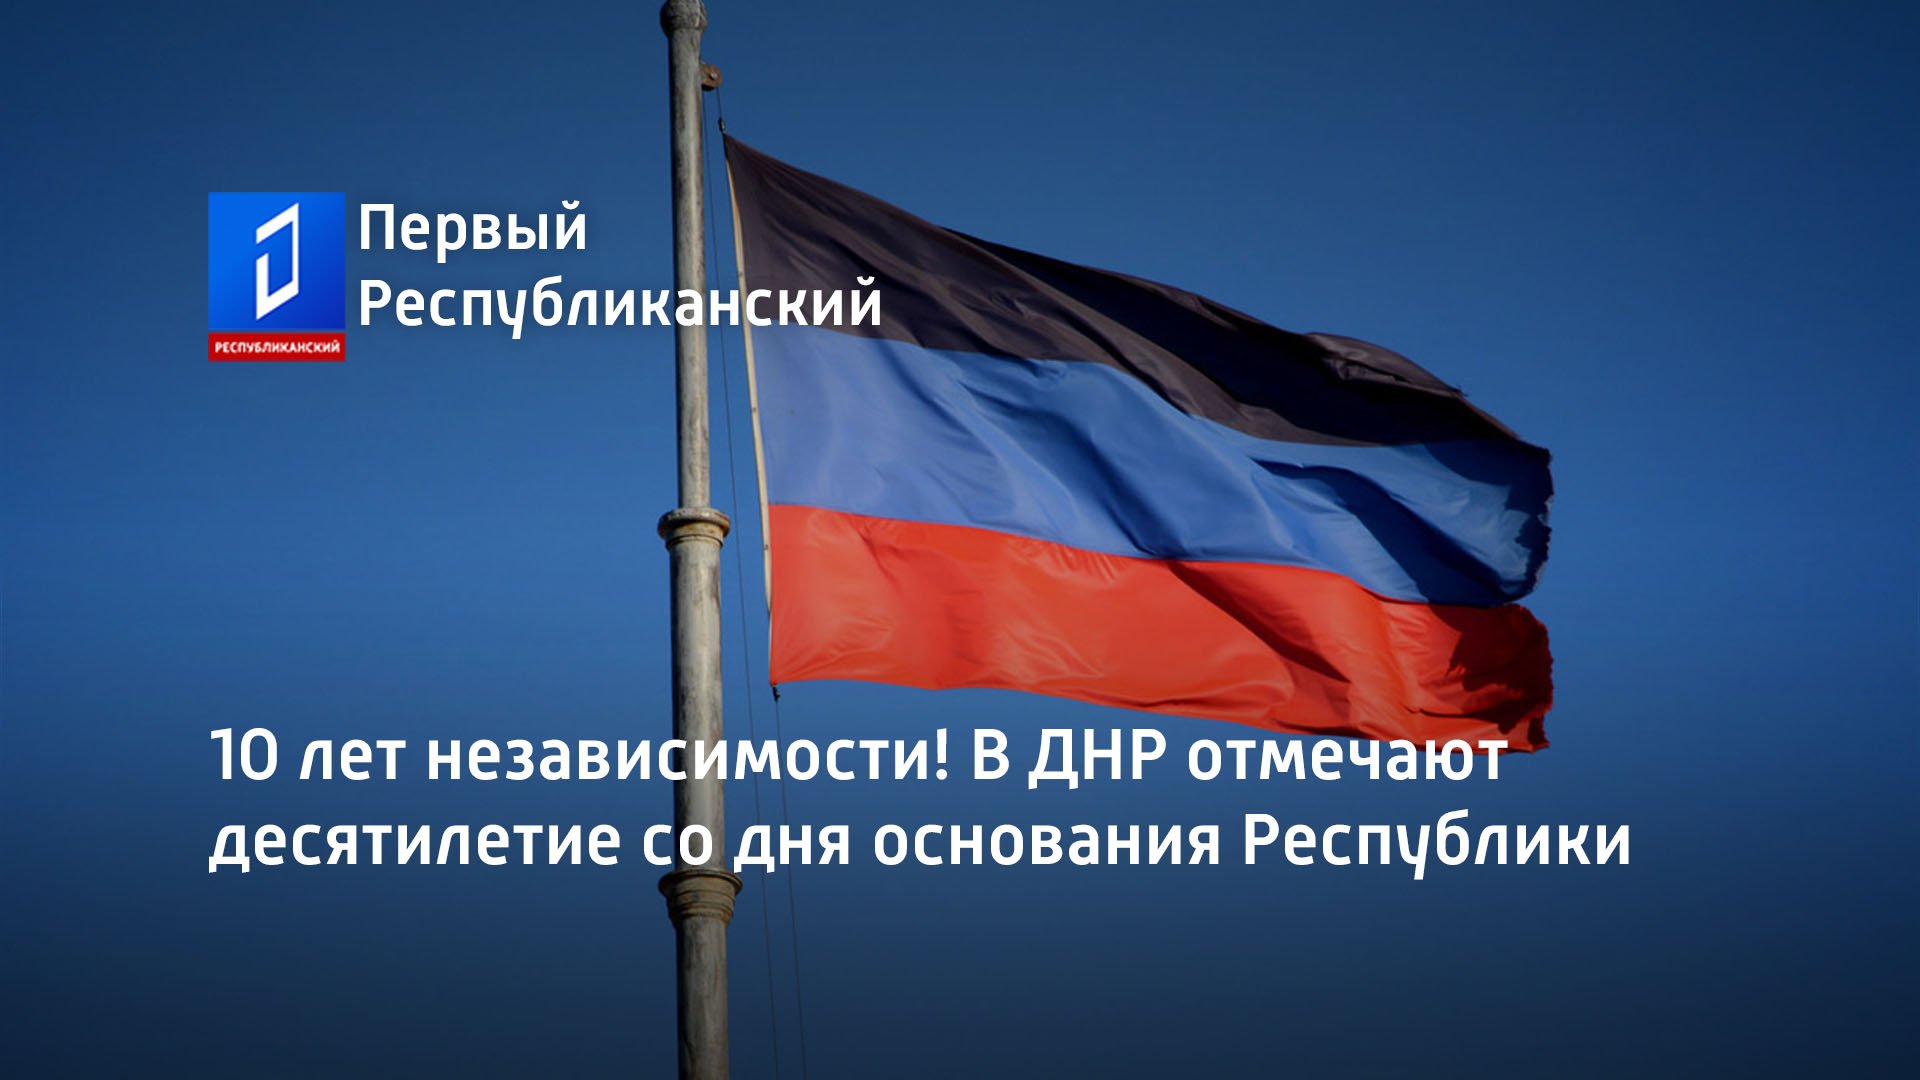 10 лет независимости! В ДНР отмечают десятилетие со дня основания Республики